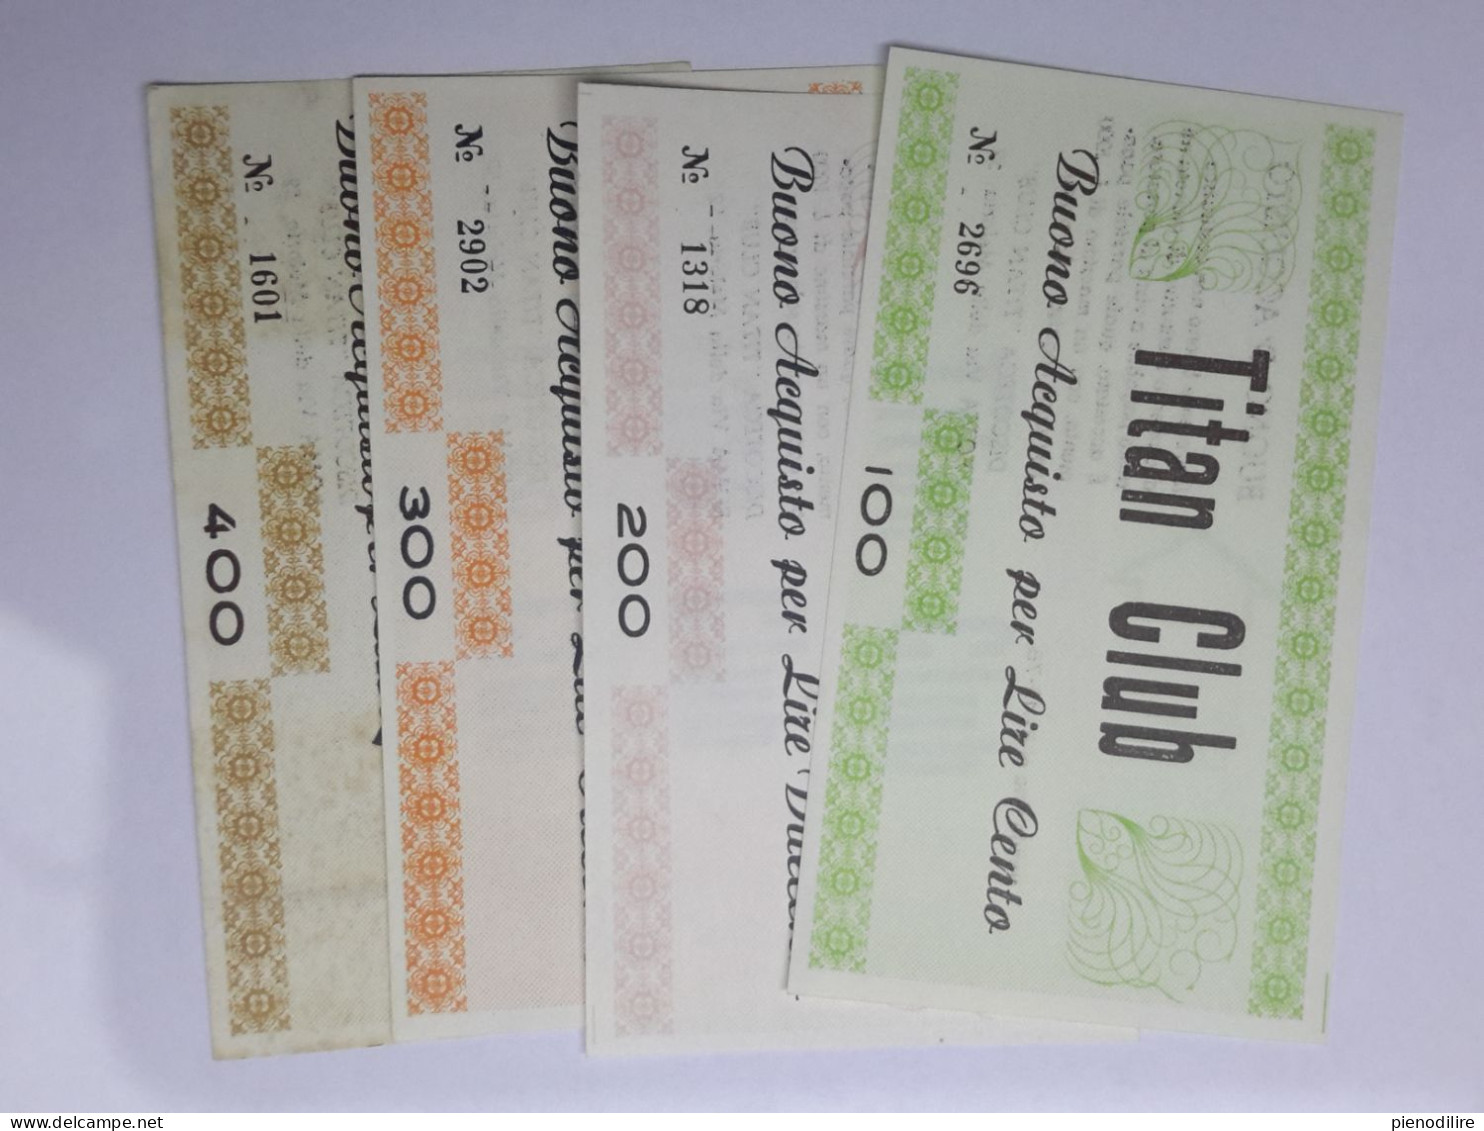 LOTTO 4Pz. 100 200 300 400 LIRE BUONI ACQUISTO TITAN CLUB VALIDO FINO AL 31.12.1976 (A.3) - [10] Checks And Mini-checks